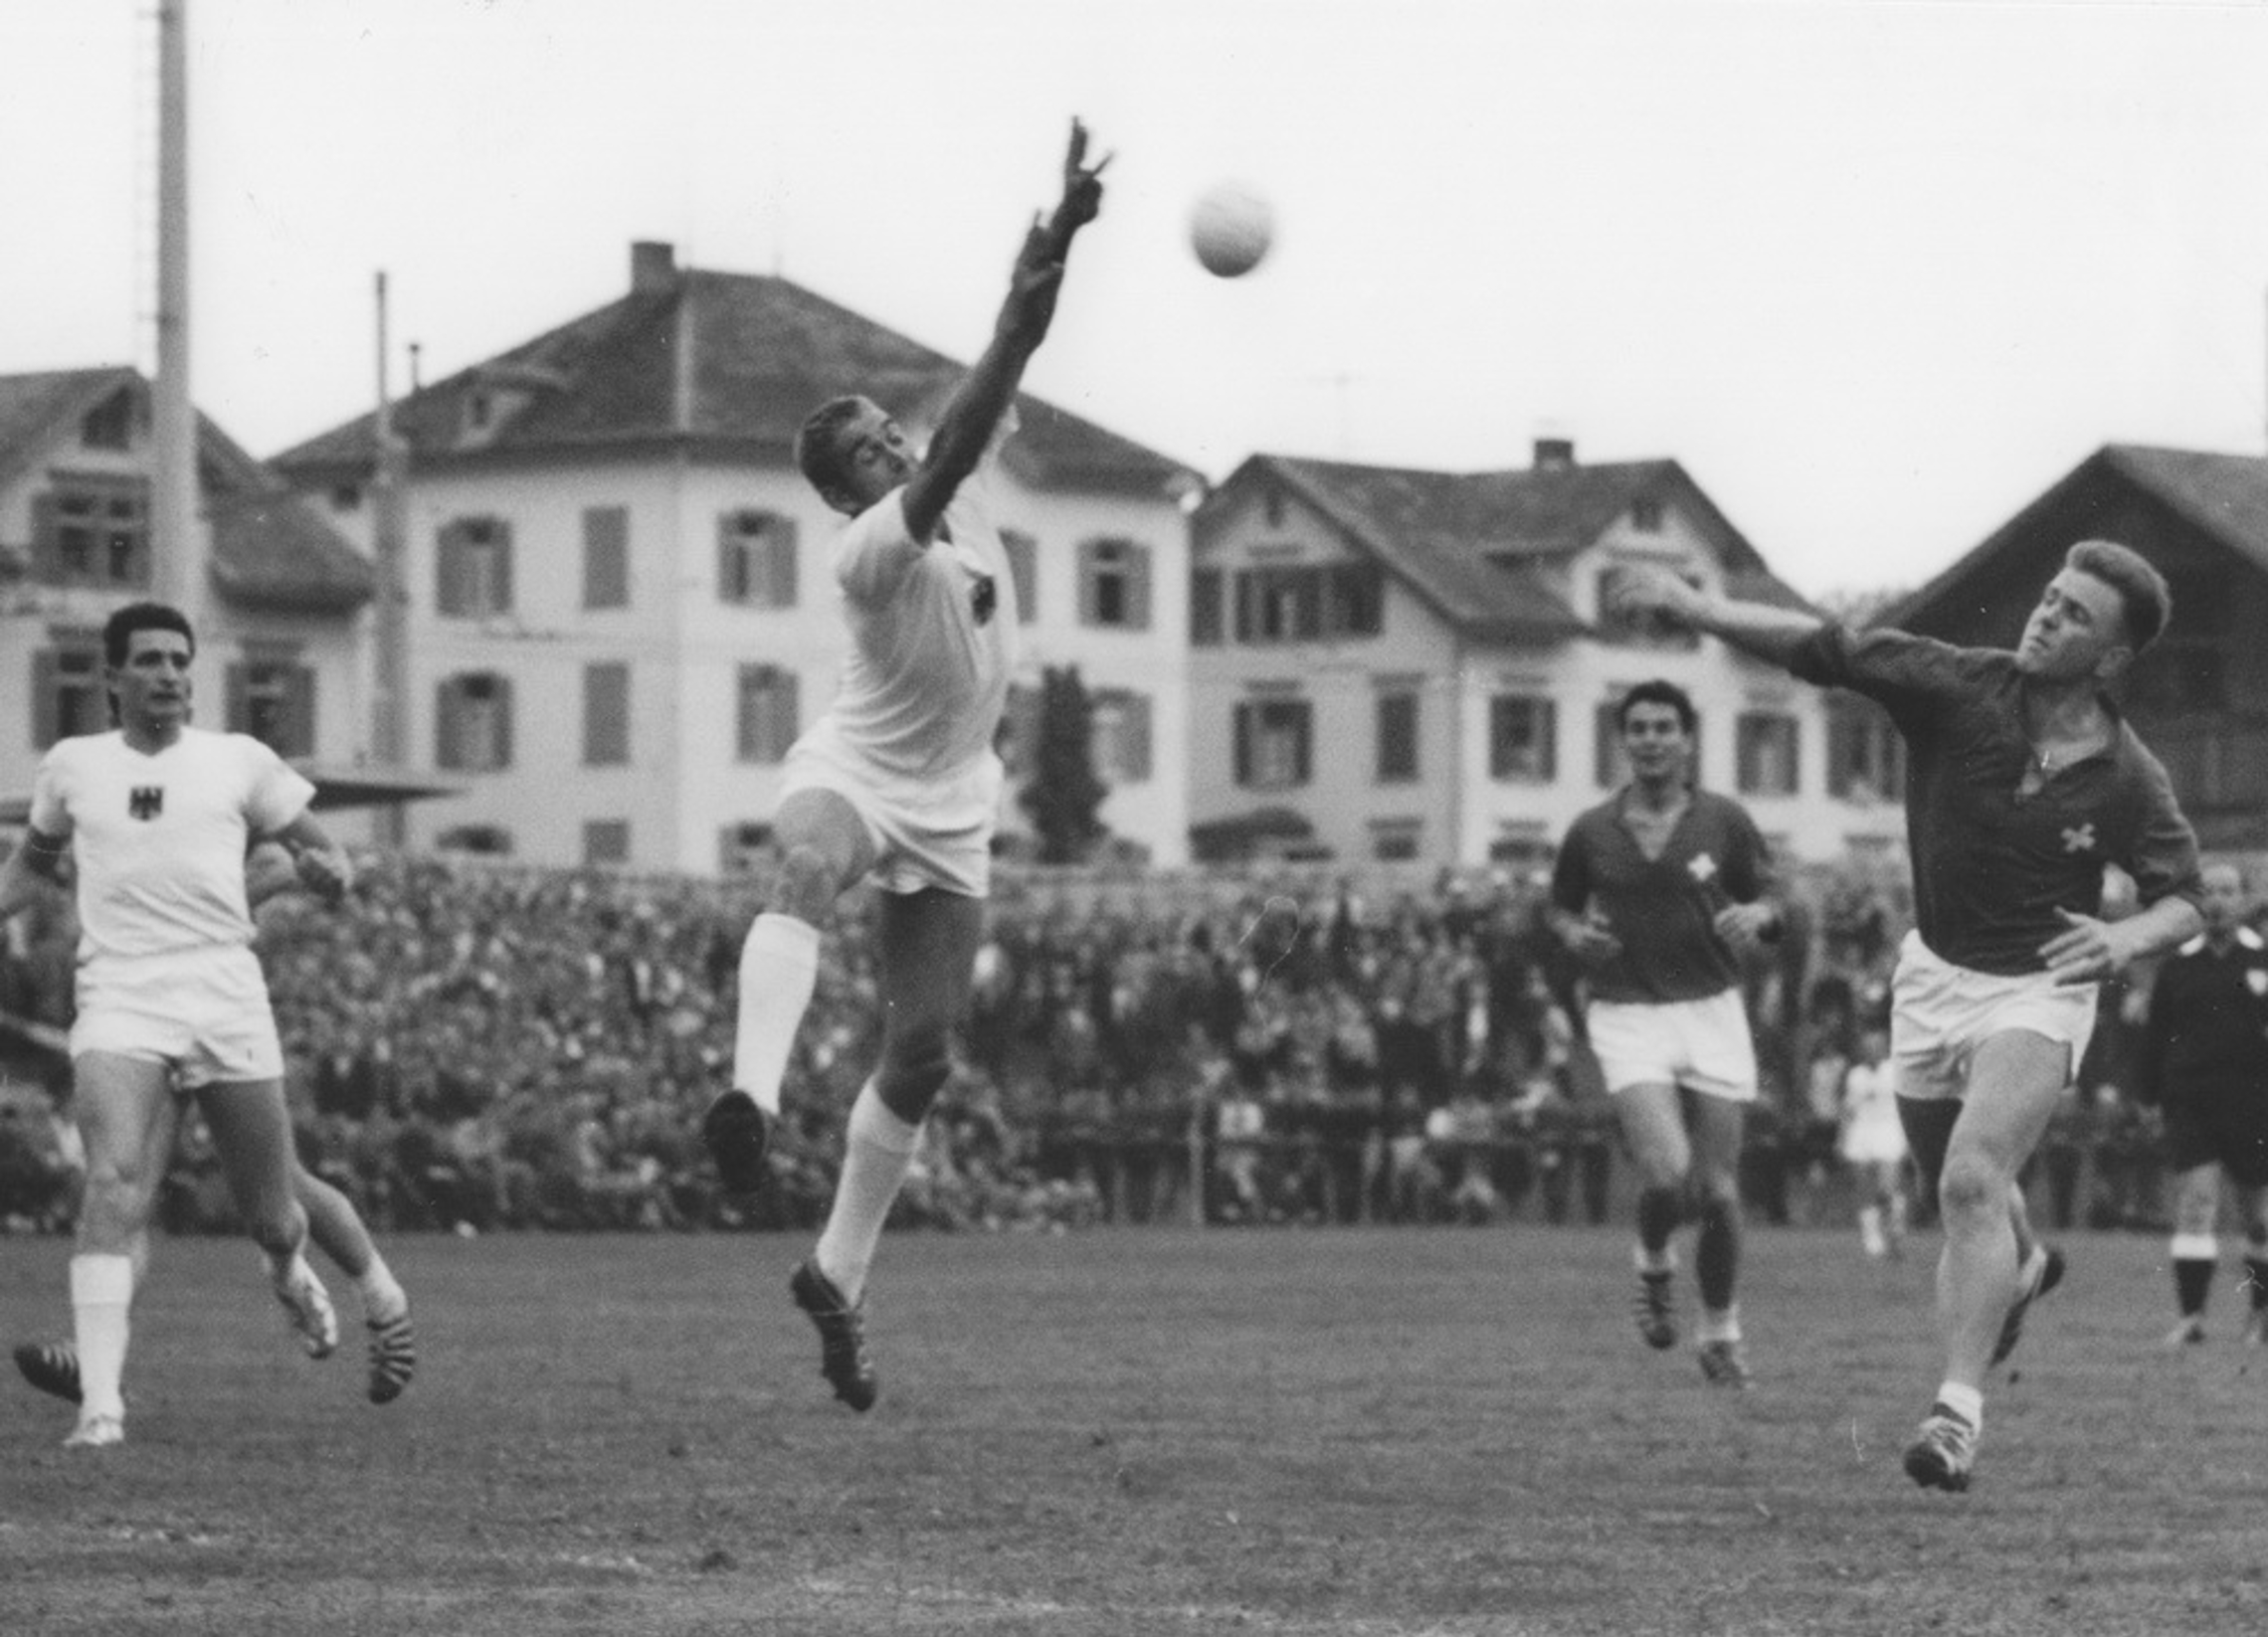 30.6.1962 Schweiz - Deutschland 18:24 (11:12), St. Gallen, 4500 Zuschauer